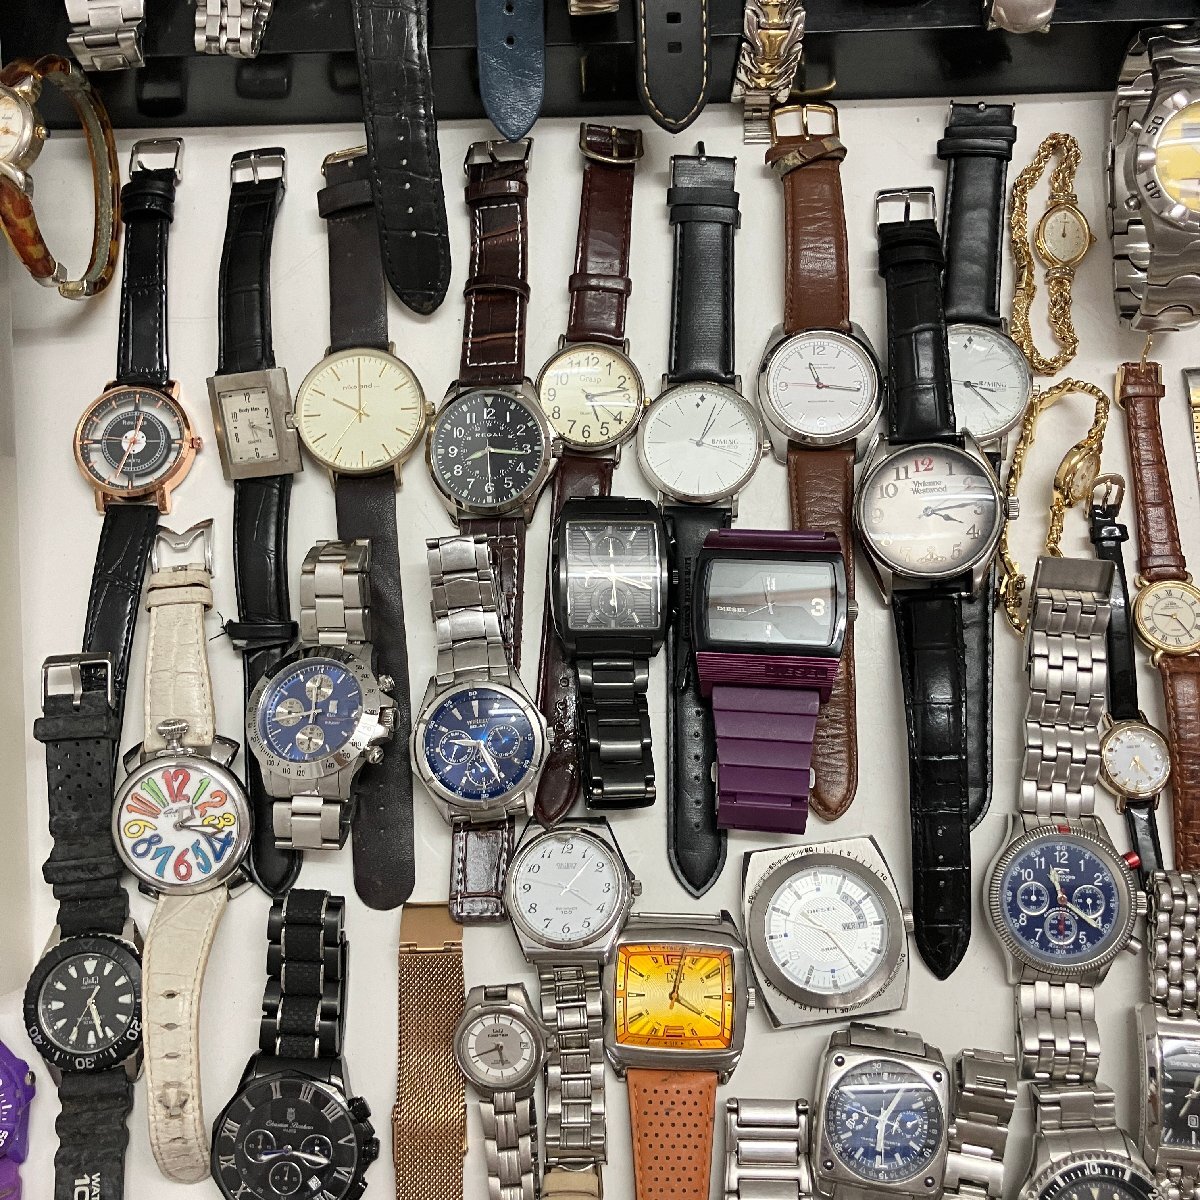 ◆【ジャンク品】 ブランド腕時計 大量 まとめ売り 約137本 約8.3kg SEIKO/CASIO/CITIZEN/DIESEL その他多数 ヴィンテージ 電池切れ 現状品_画像6